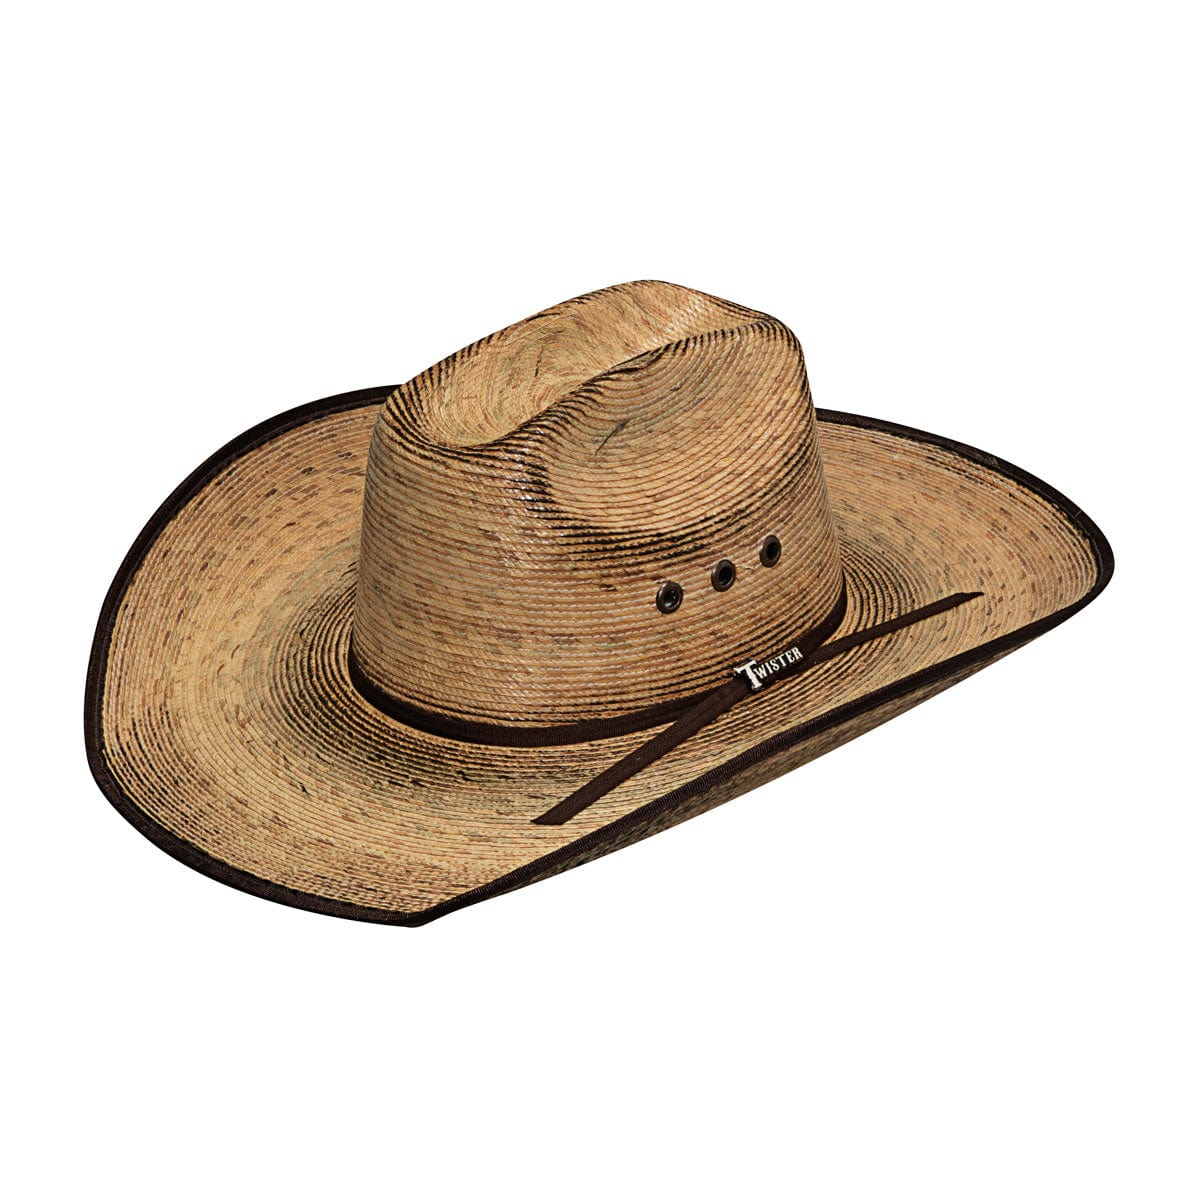 M&F WESTERN Hats M&F Western Men's Twister Fired Palm Leaf Straw Cowboy Hat T65208